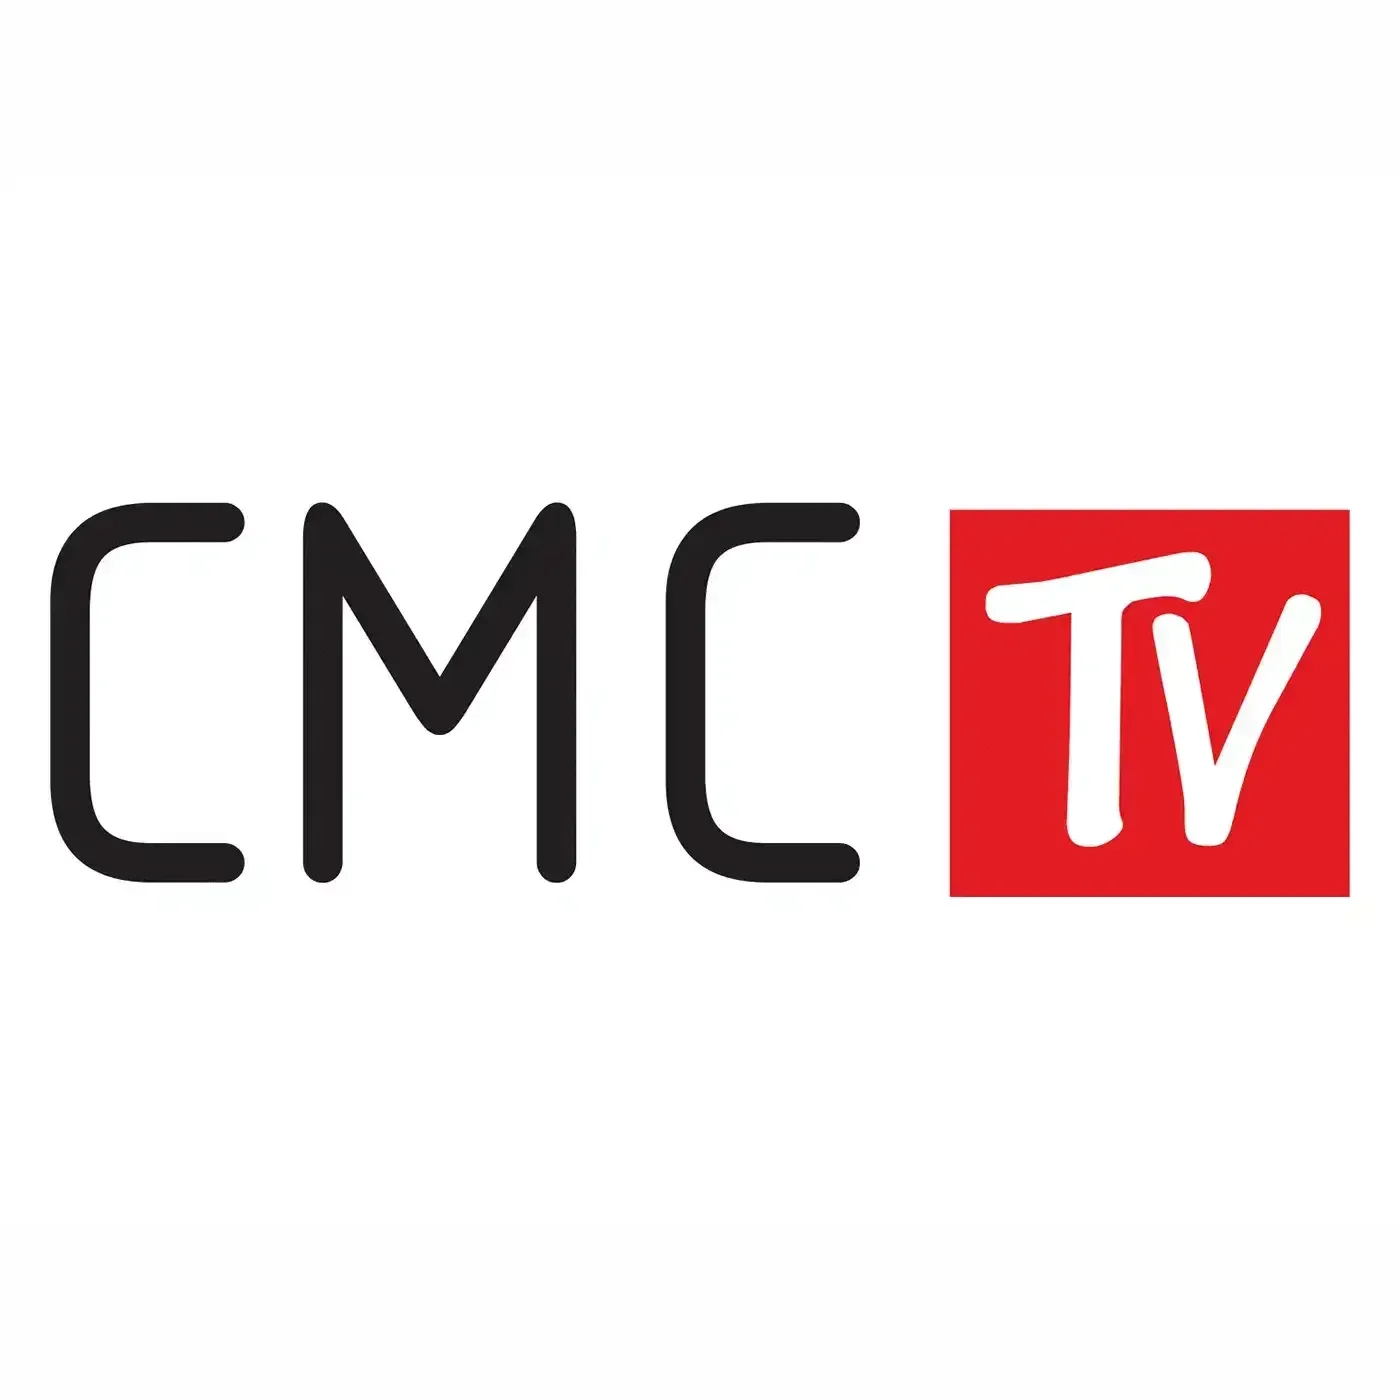 CMC TV